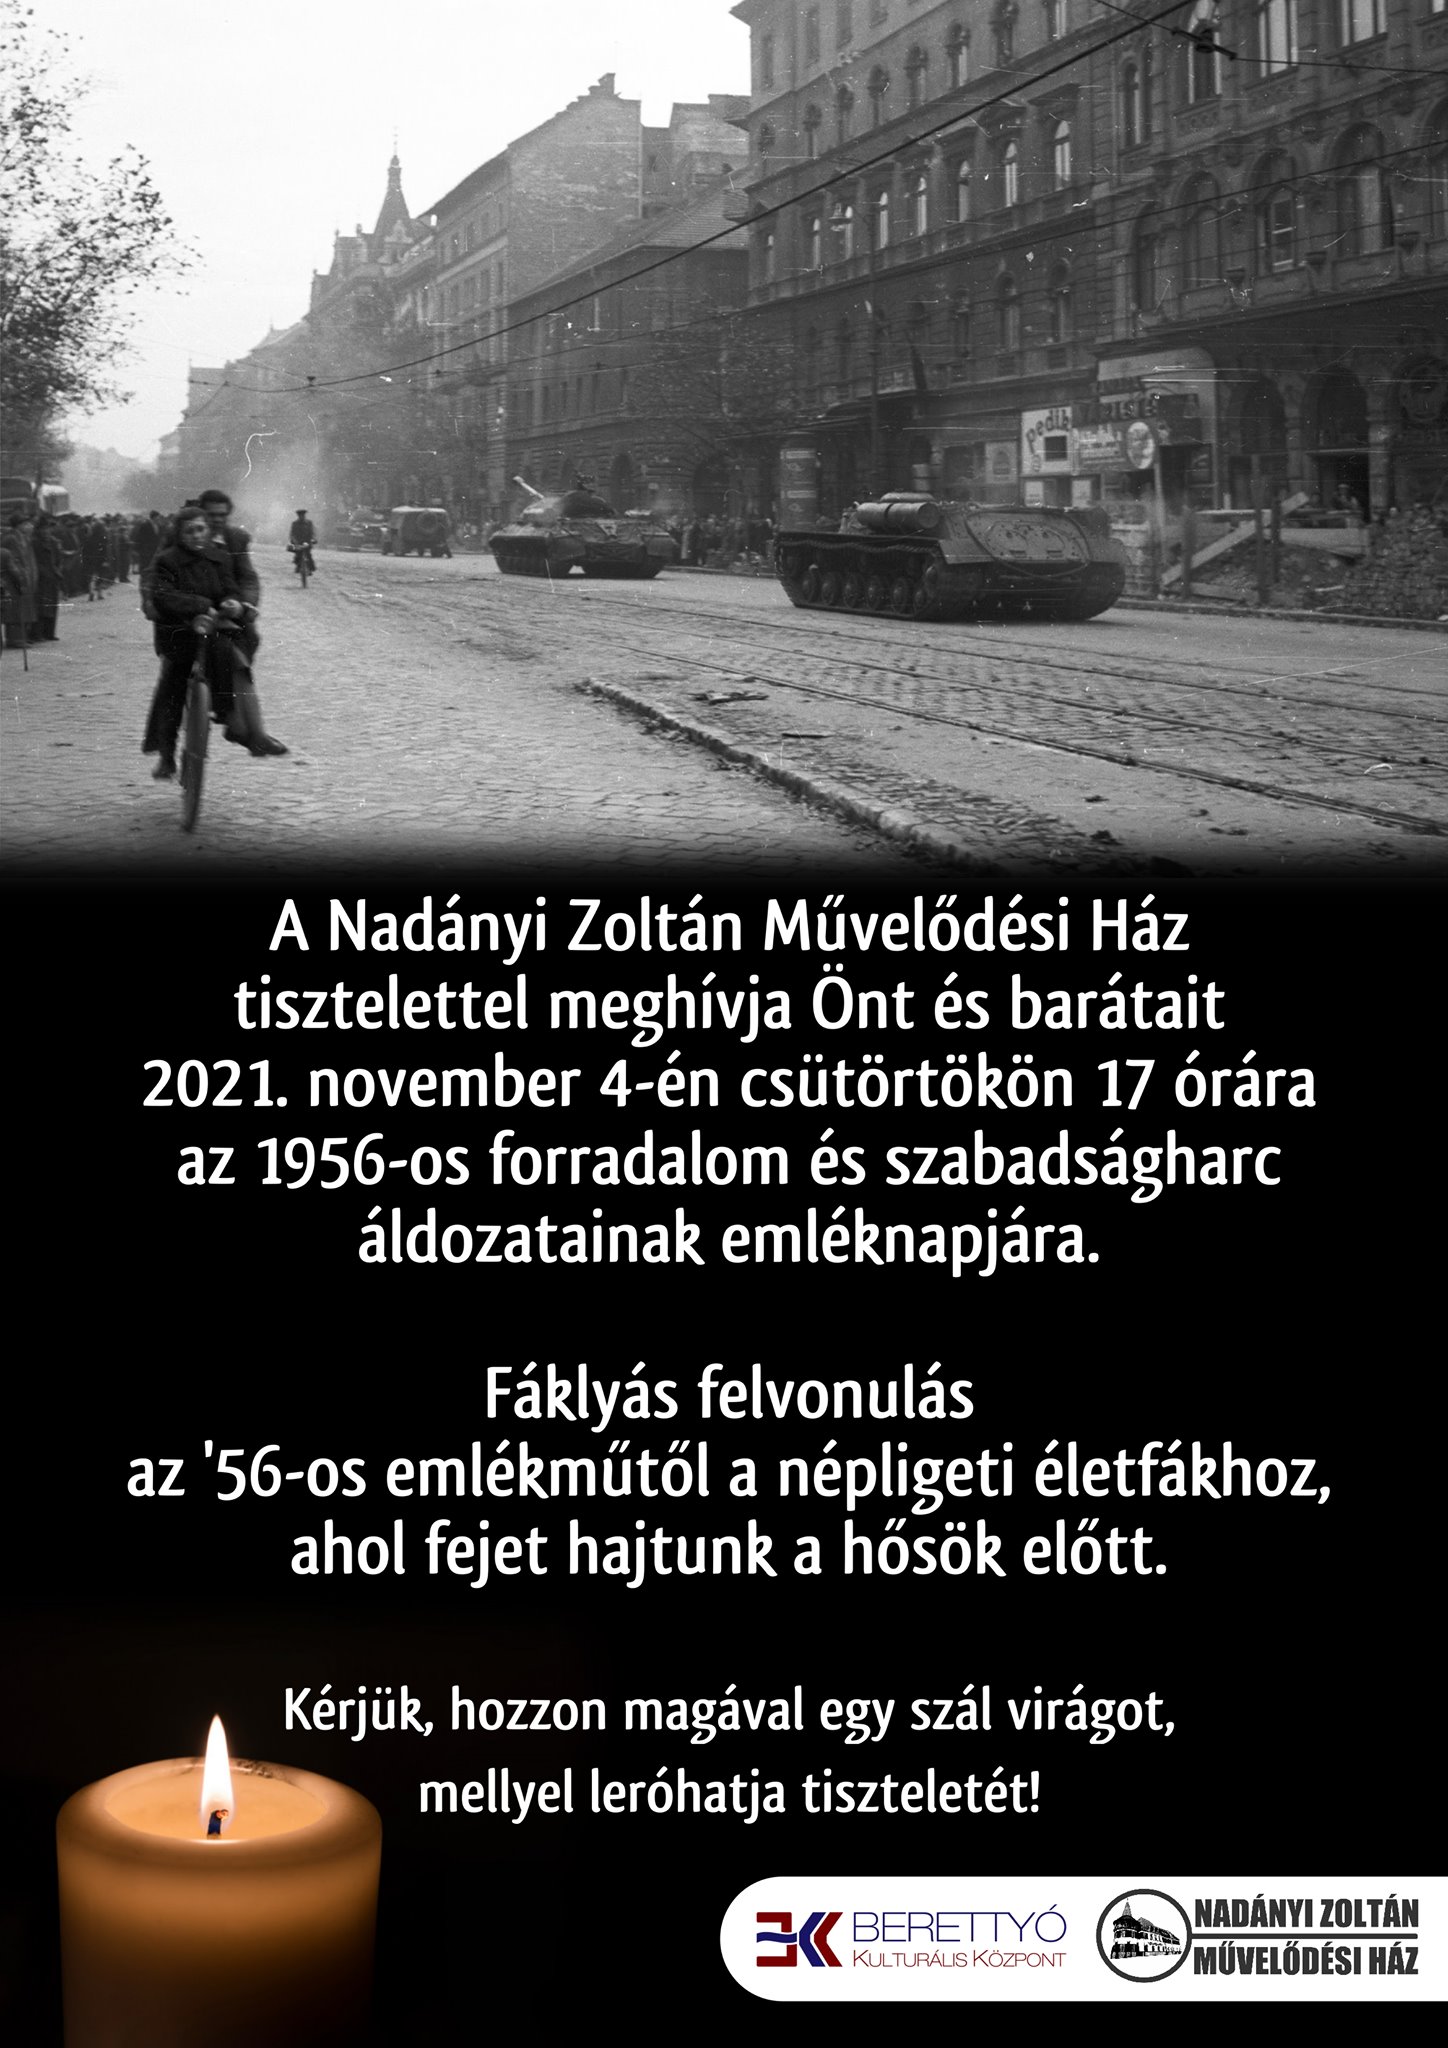 1956-os forradalom és szabadságharc áldozatainak emléknapja 